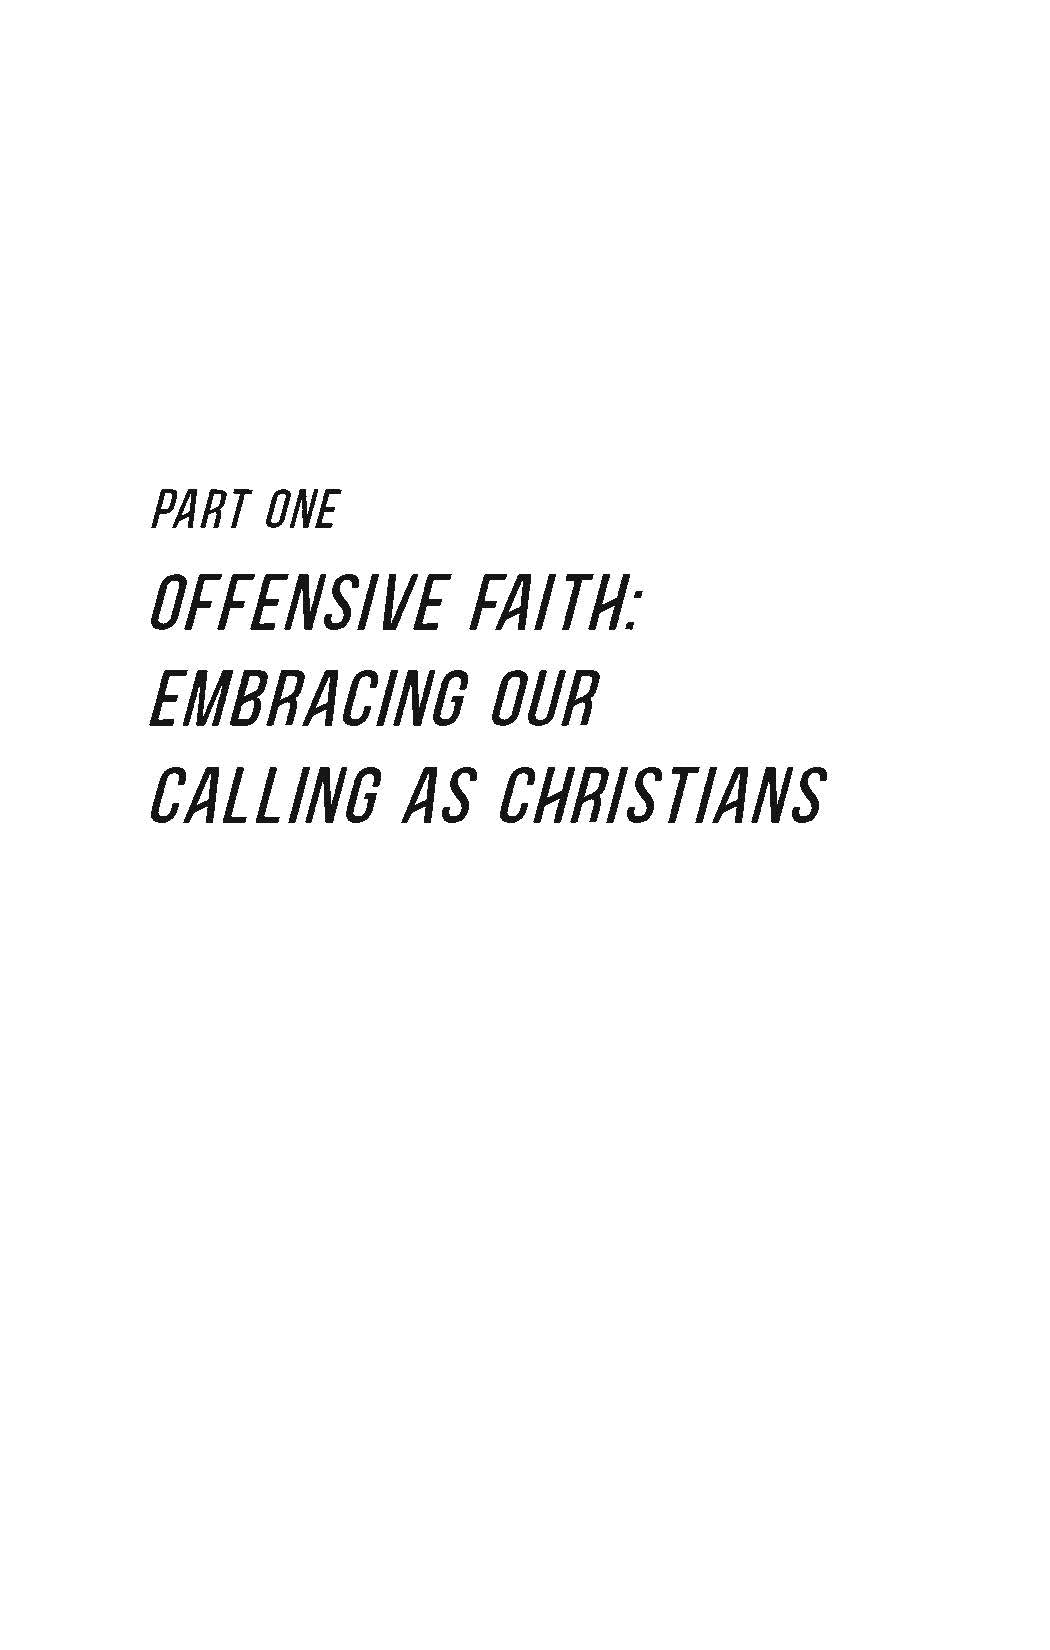 Offensive Faith